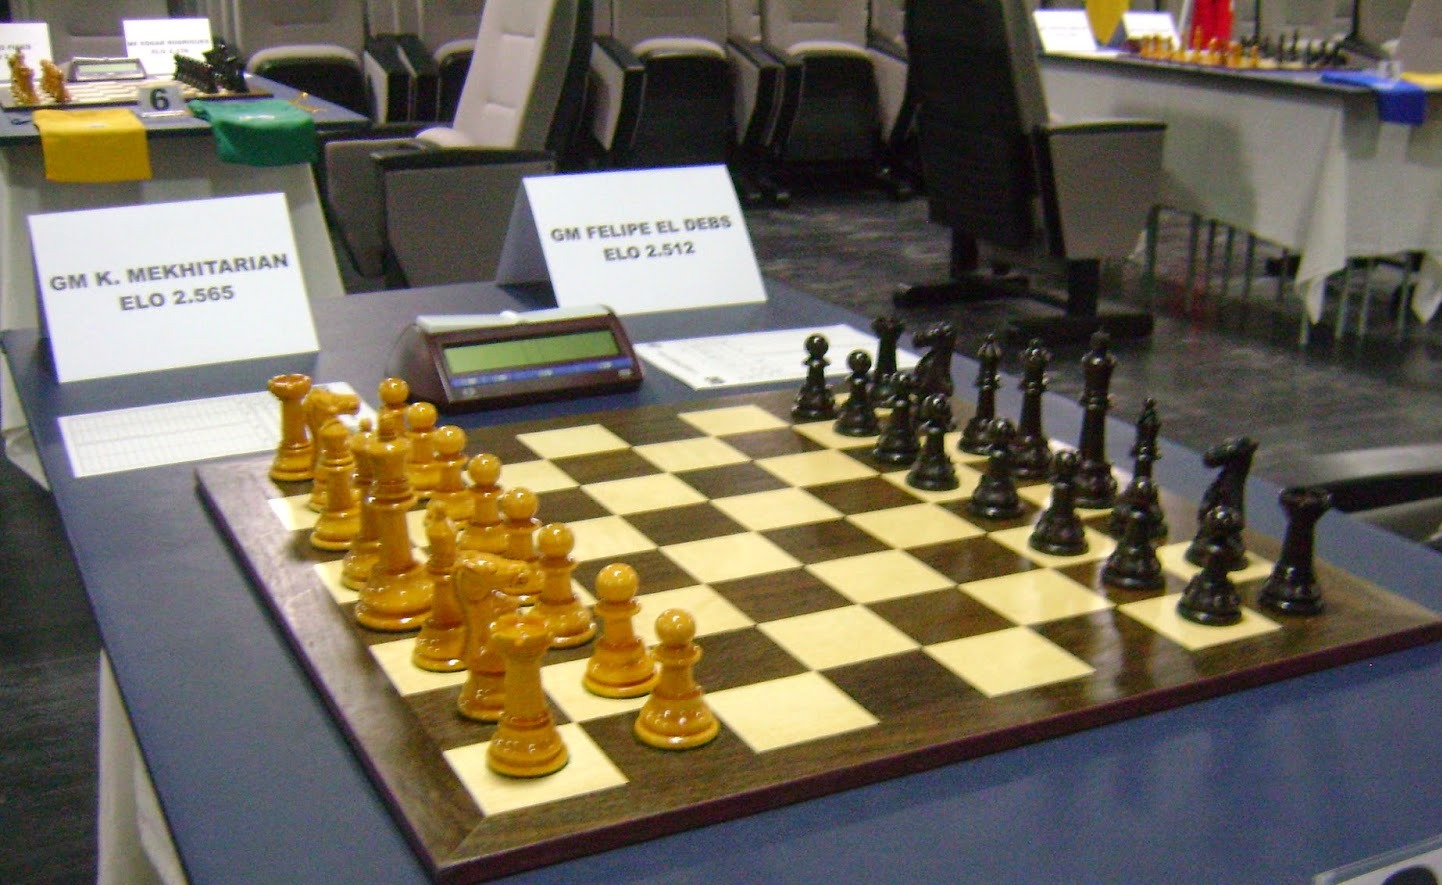 Terminada a - Confederação Brasileira de Xadrez - CBX